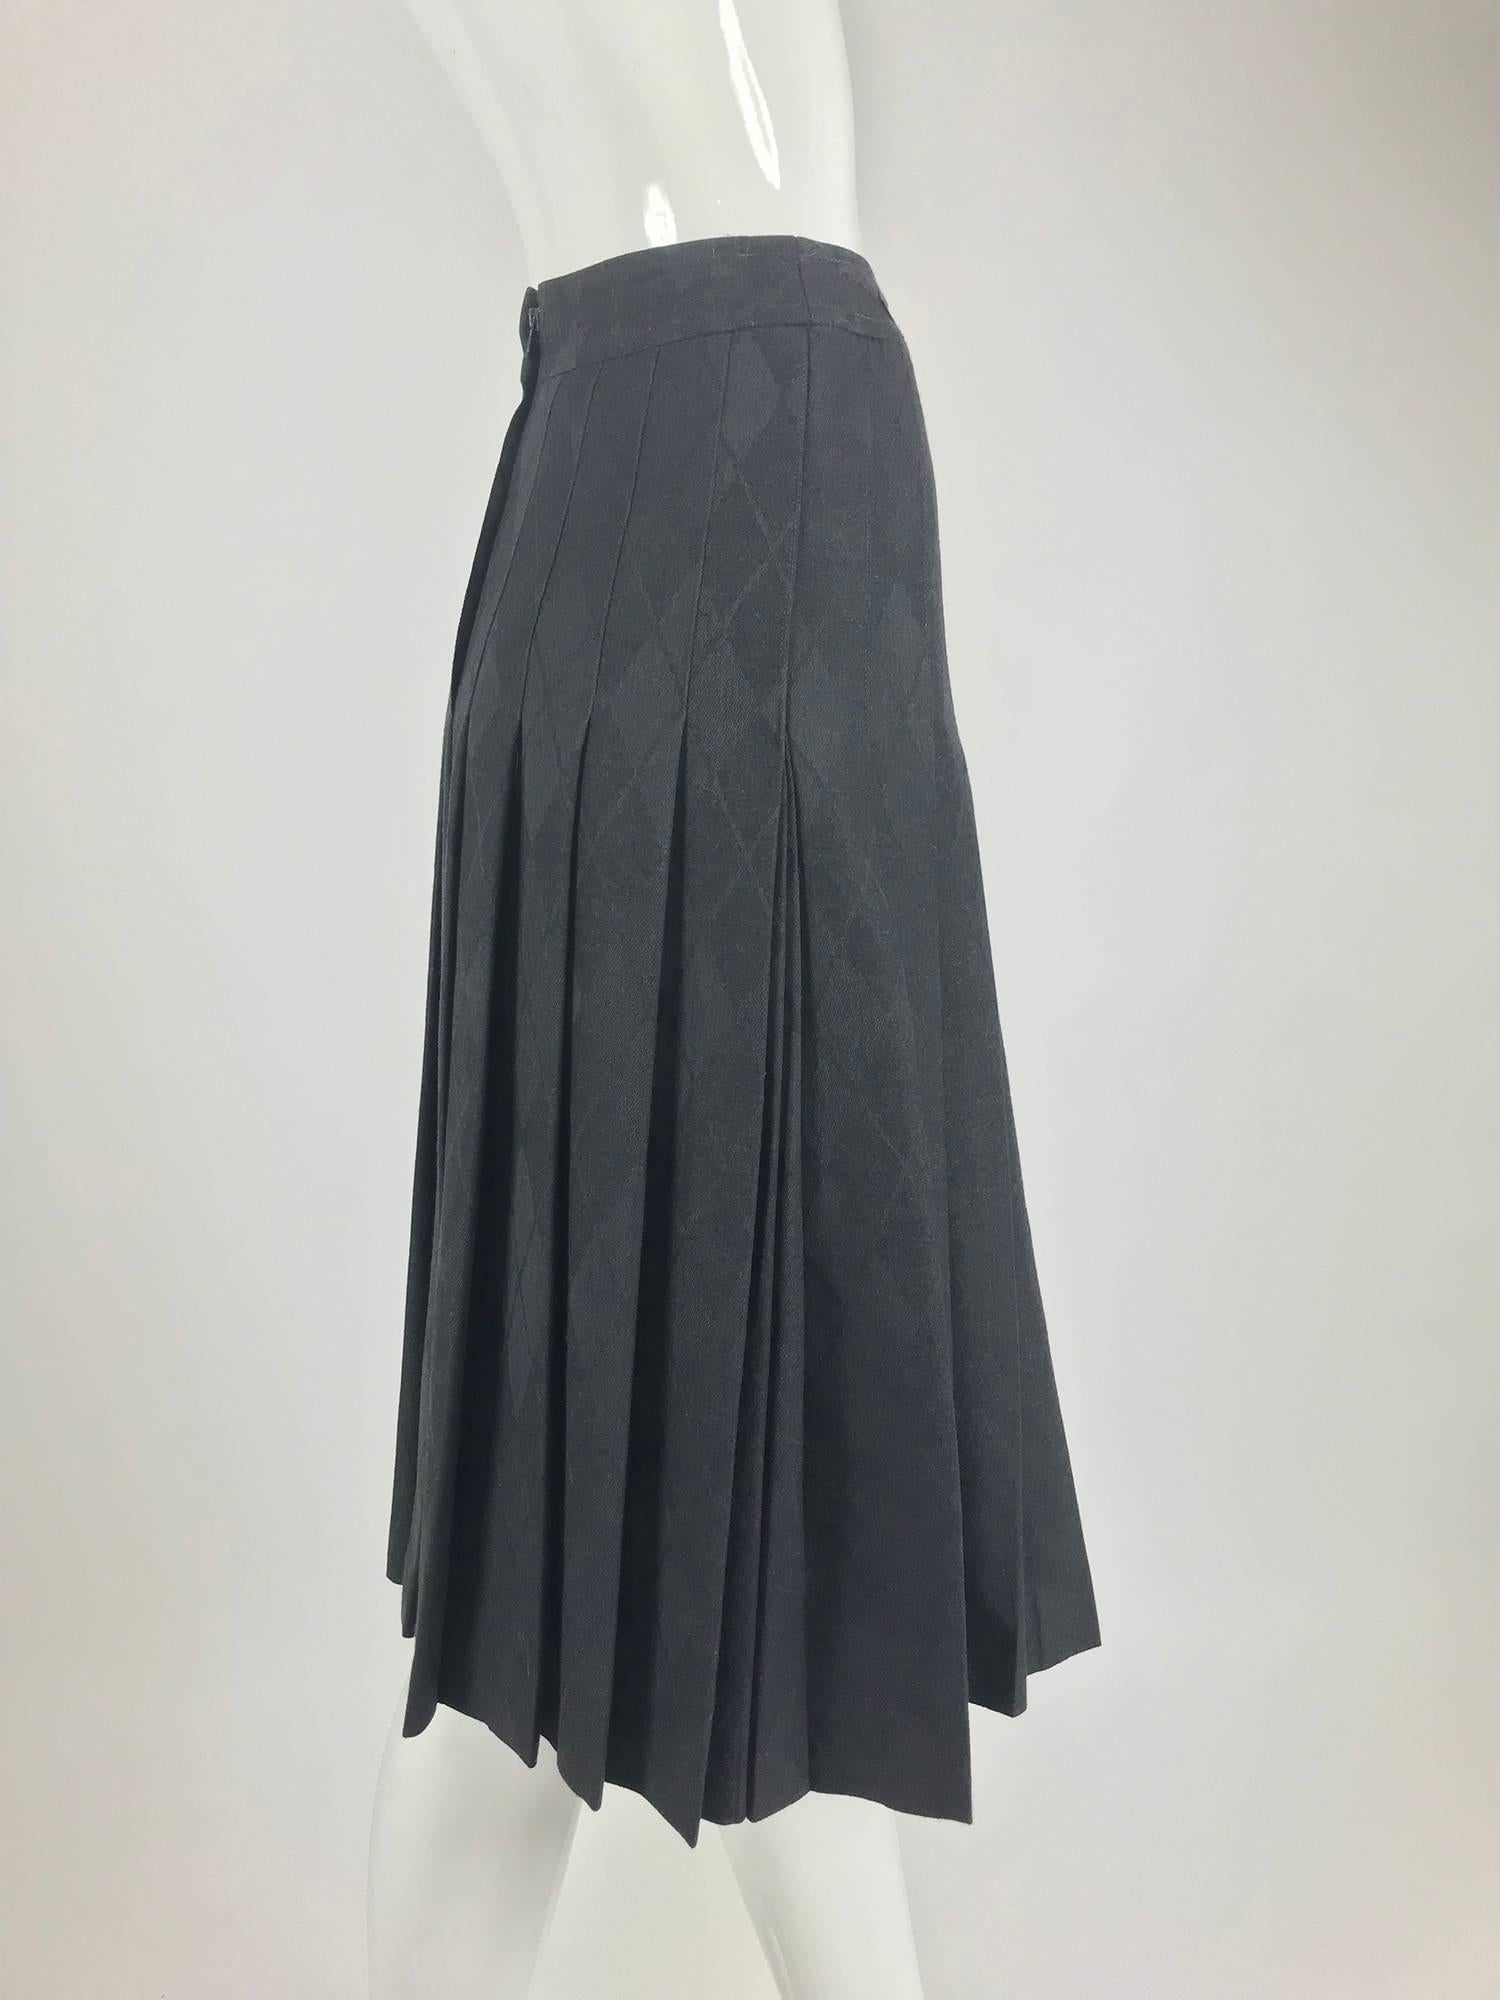 Black Celine grey wool jacquard pleated skirt 1990s